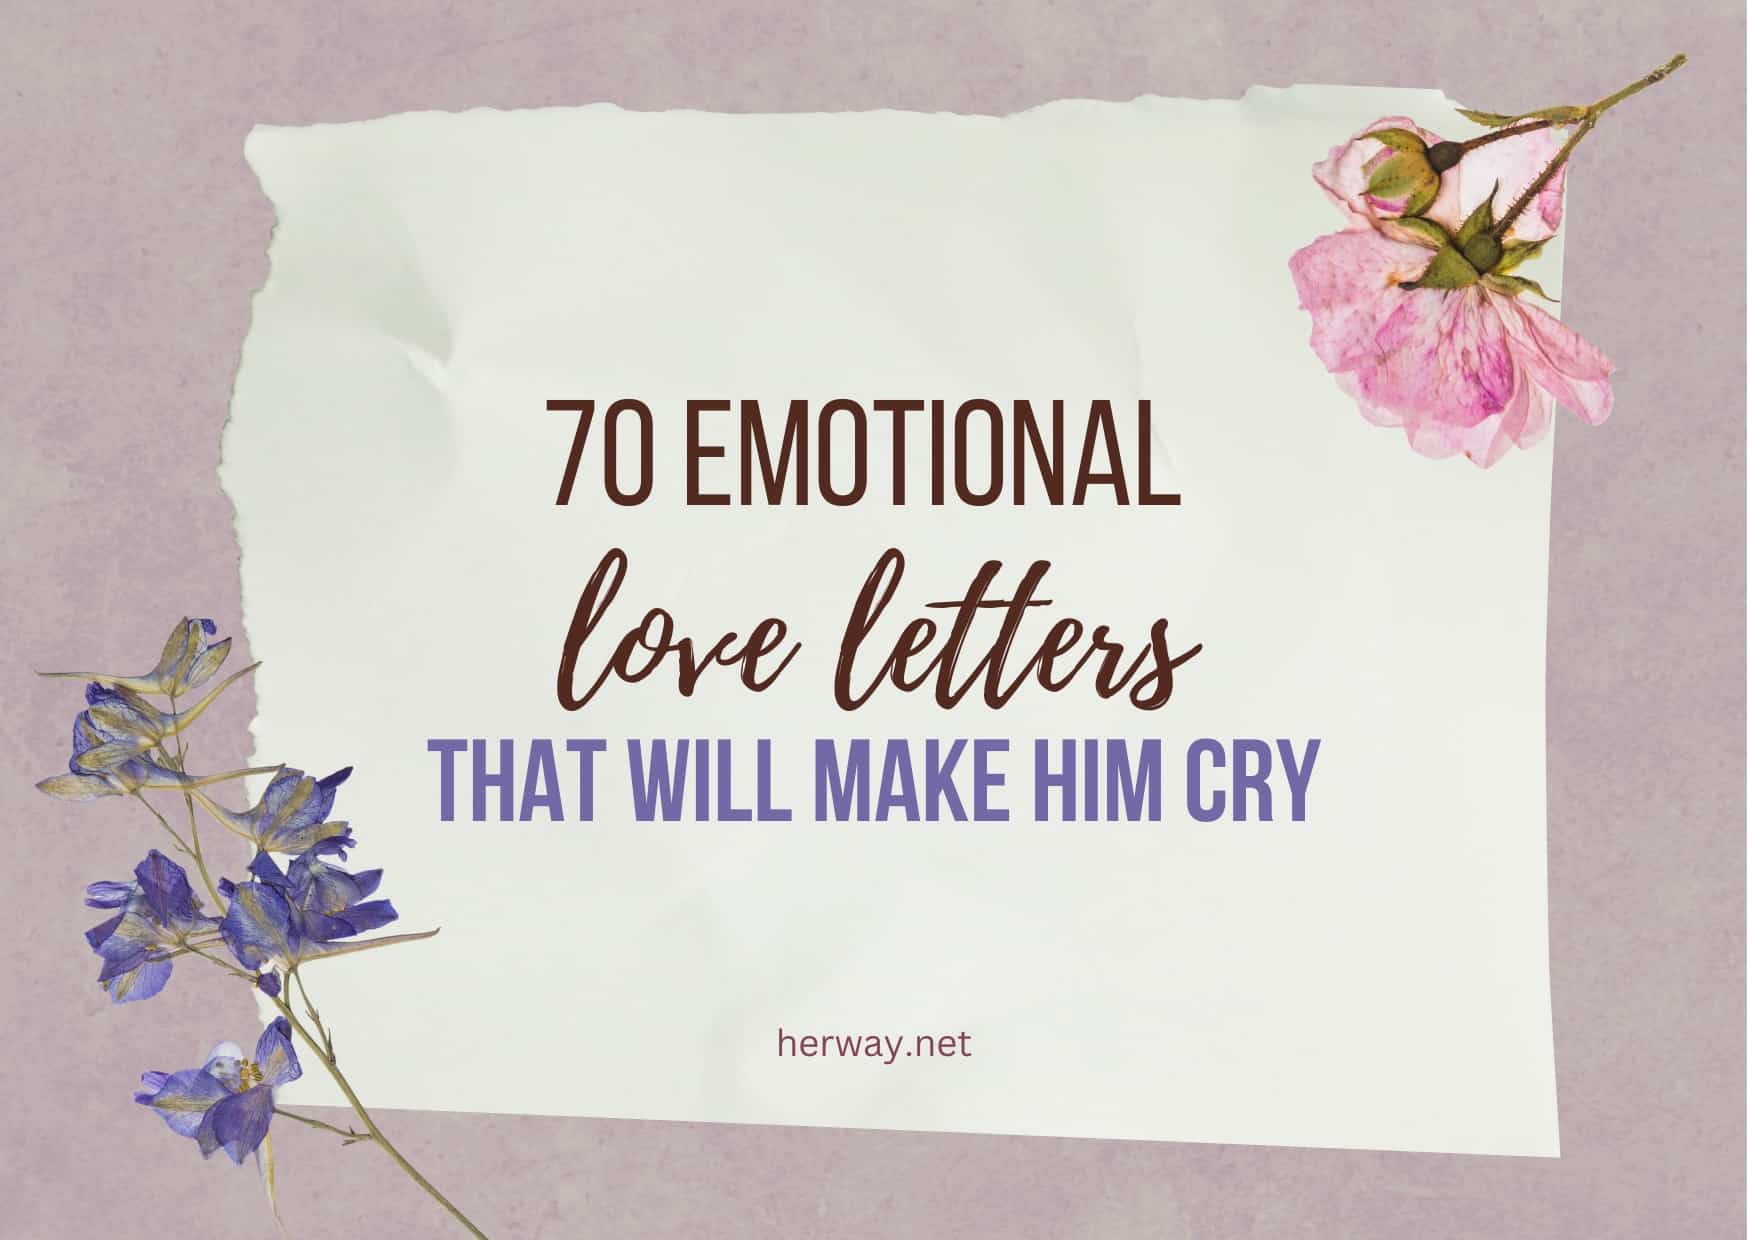 lettere d'amore emotive per lui che lo fanno piangere